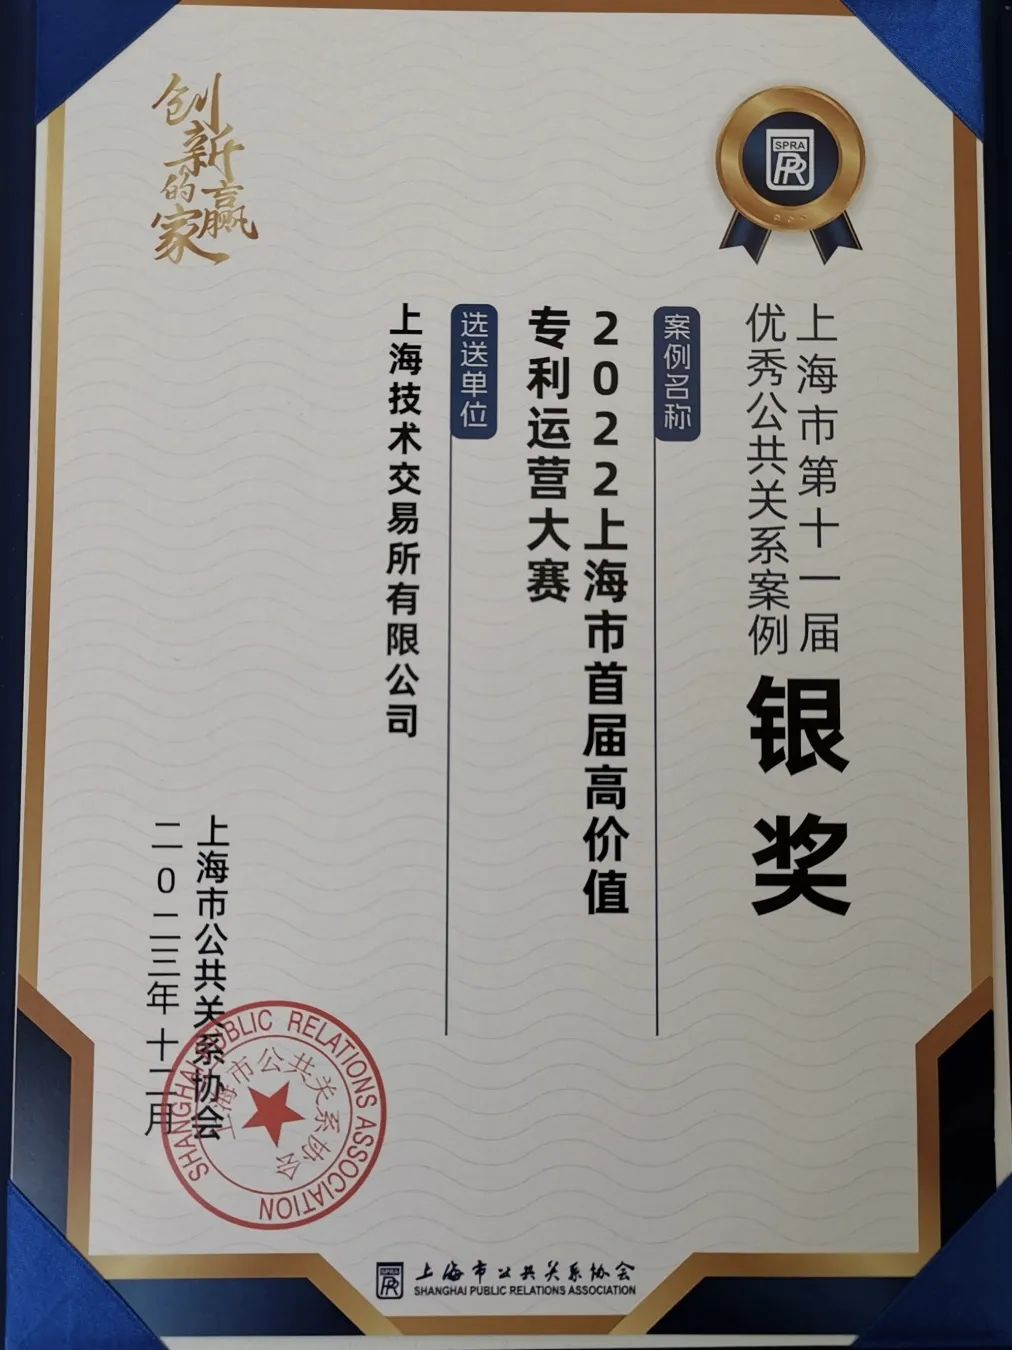 上技所荣获三项银奖，上海市第十一届优秀公共关系案例颁奖典礼举行